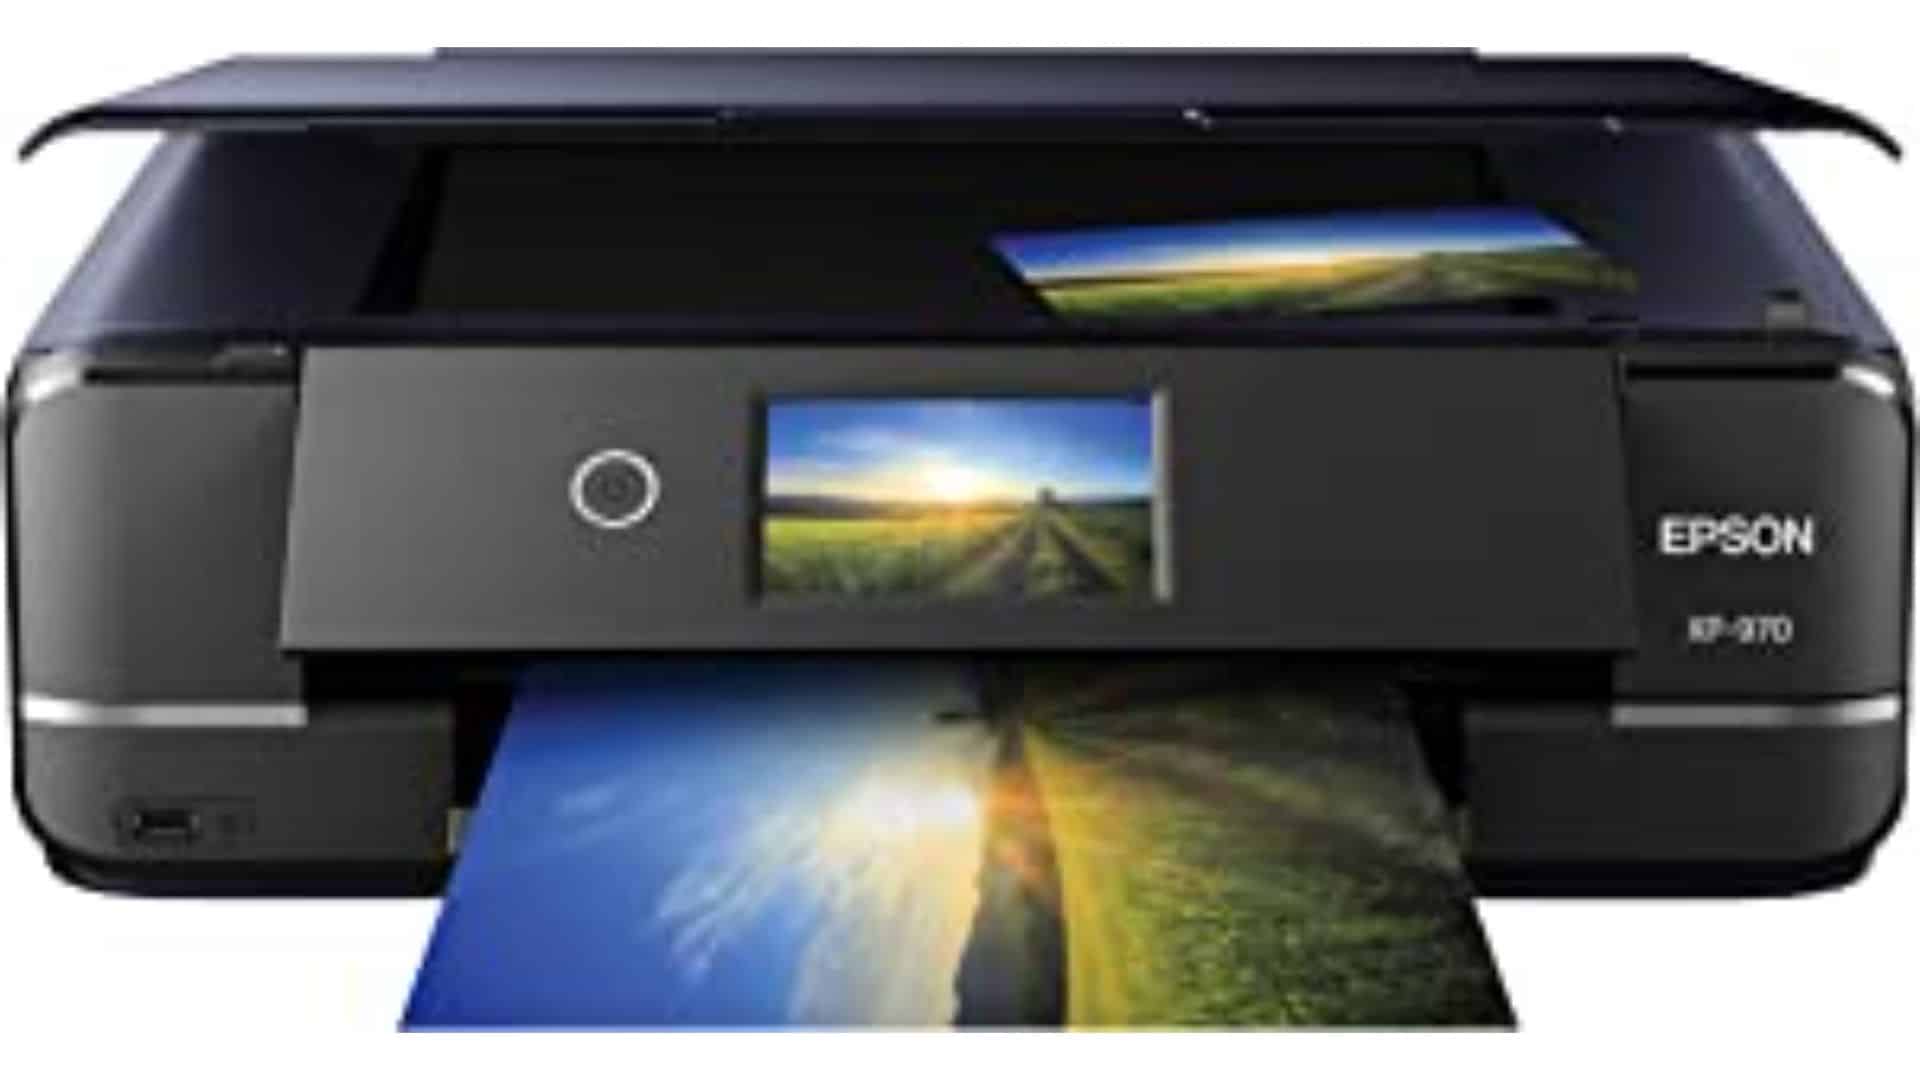 Epson Expression XP-970 Photo Printer